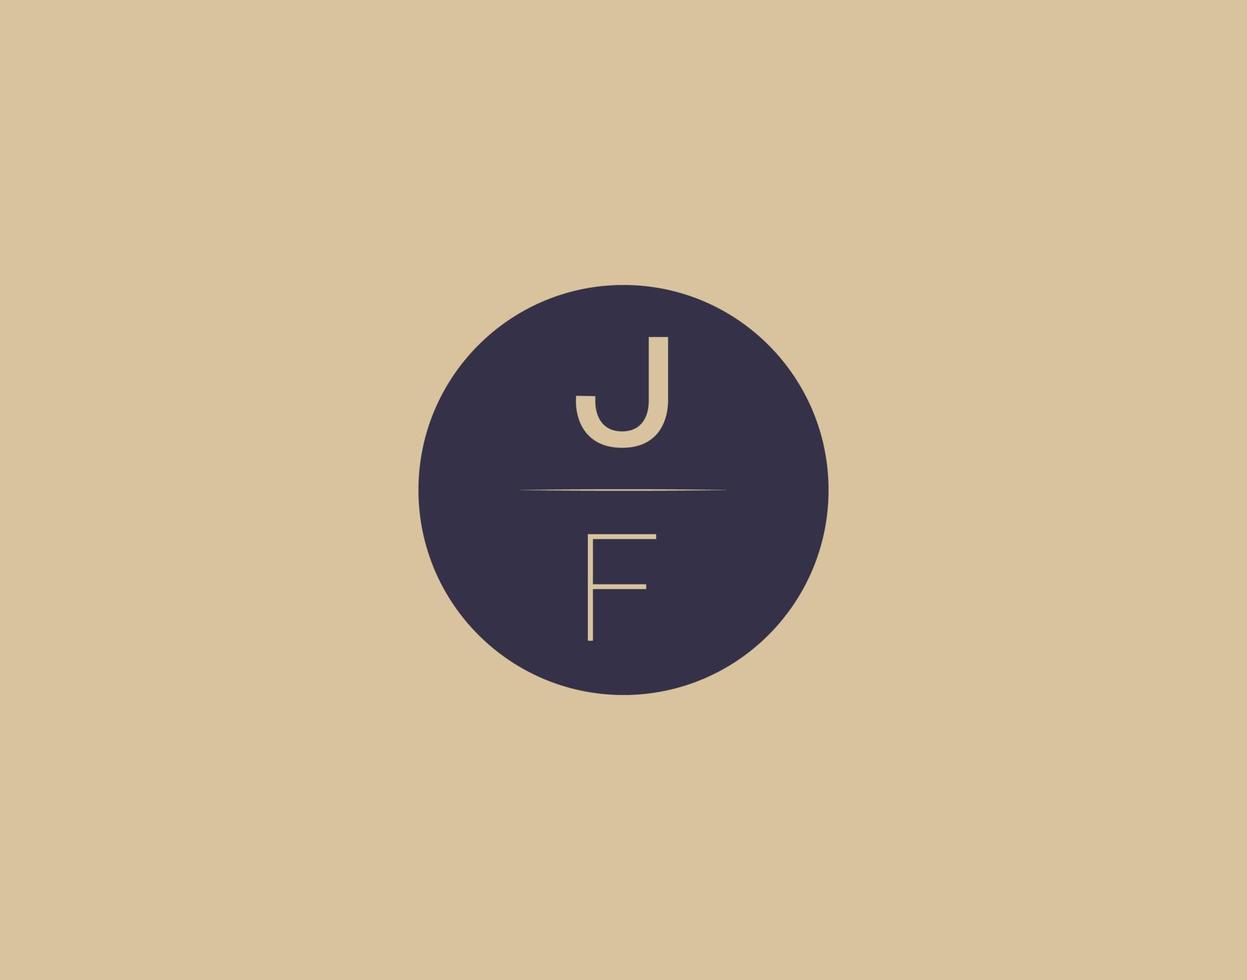 jf lettre moderne élégant logo design images vectorielles vecteur